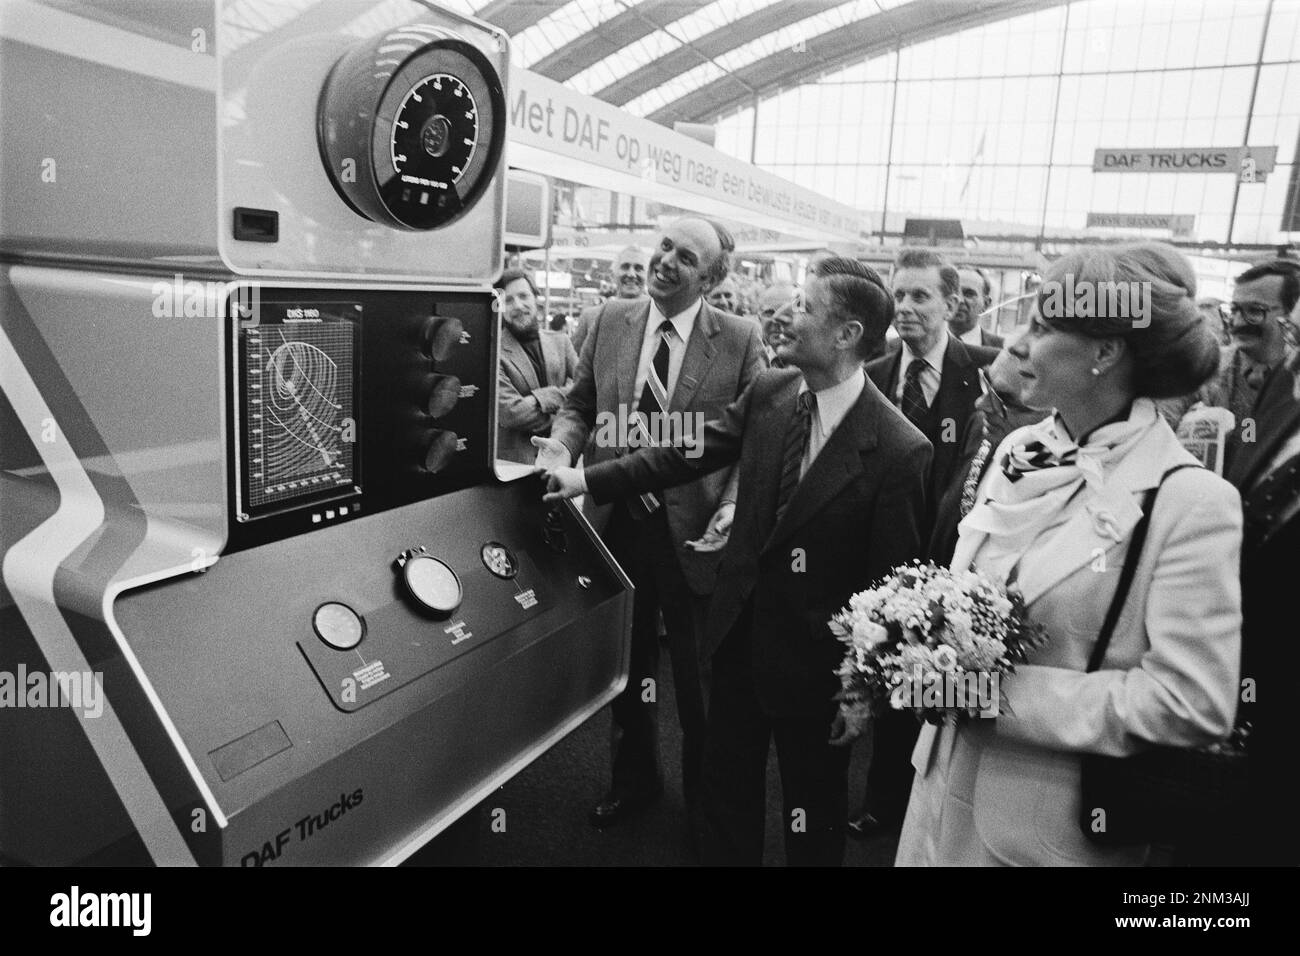 Pays-Bas Histoire: Ouverture de Bedrijfsauto RAI 1980 par le Premier ministre van Agt et le Secrétaire d'Etat. Smith Kroes ; avec système d'économie de carburant DAF environ 6 février 1980 Banque D'Images